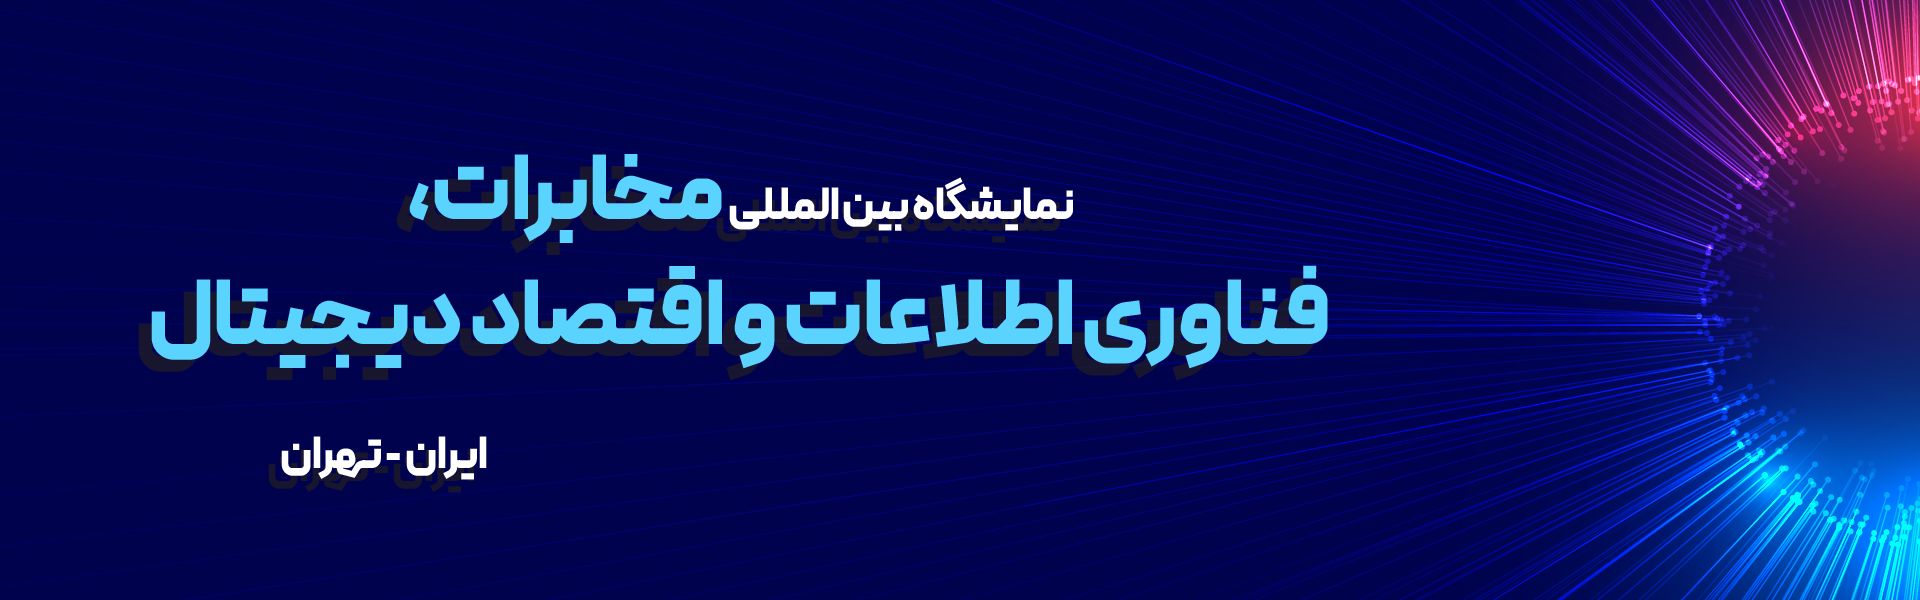 نمایشگاه مخابرات و فناوری اطلاعات و ارتباطات تهران ایران (ایران تلکام)